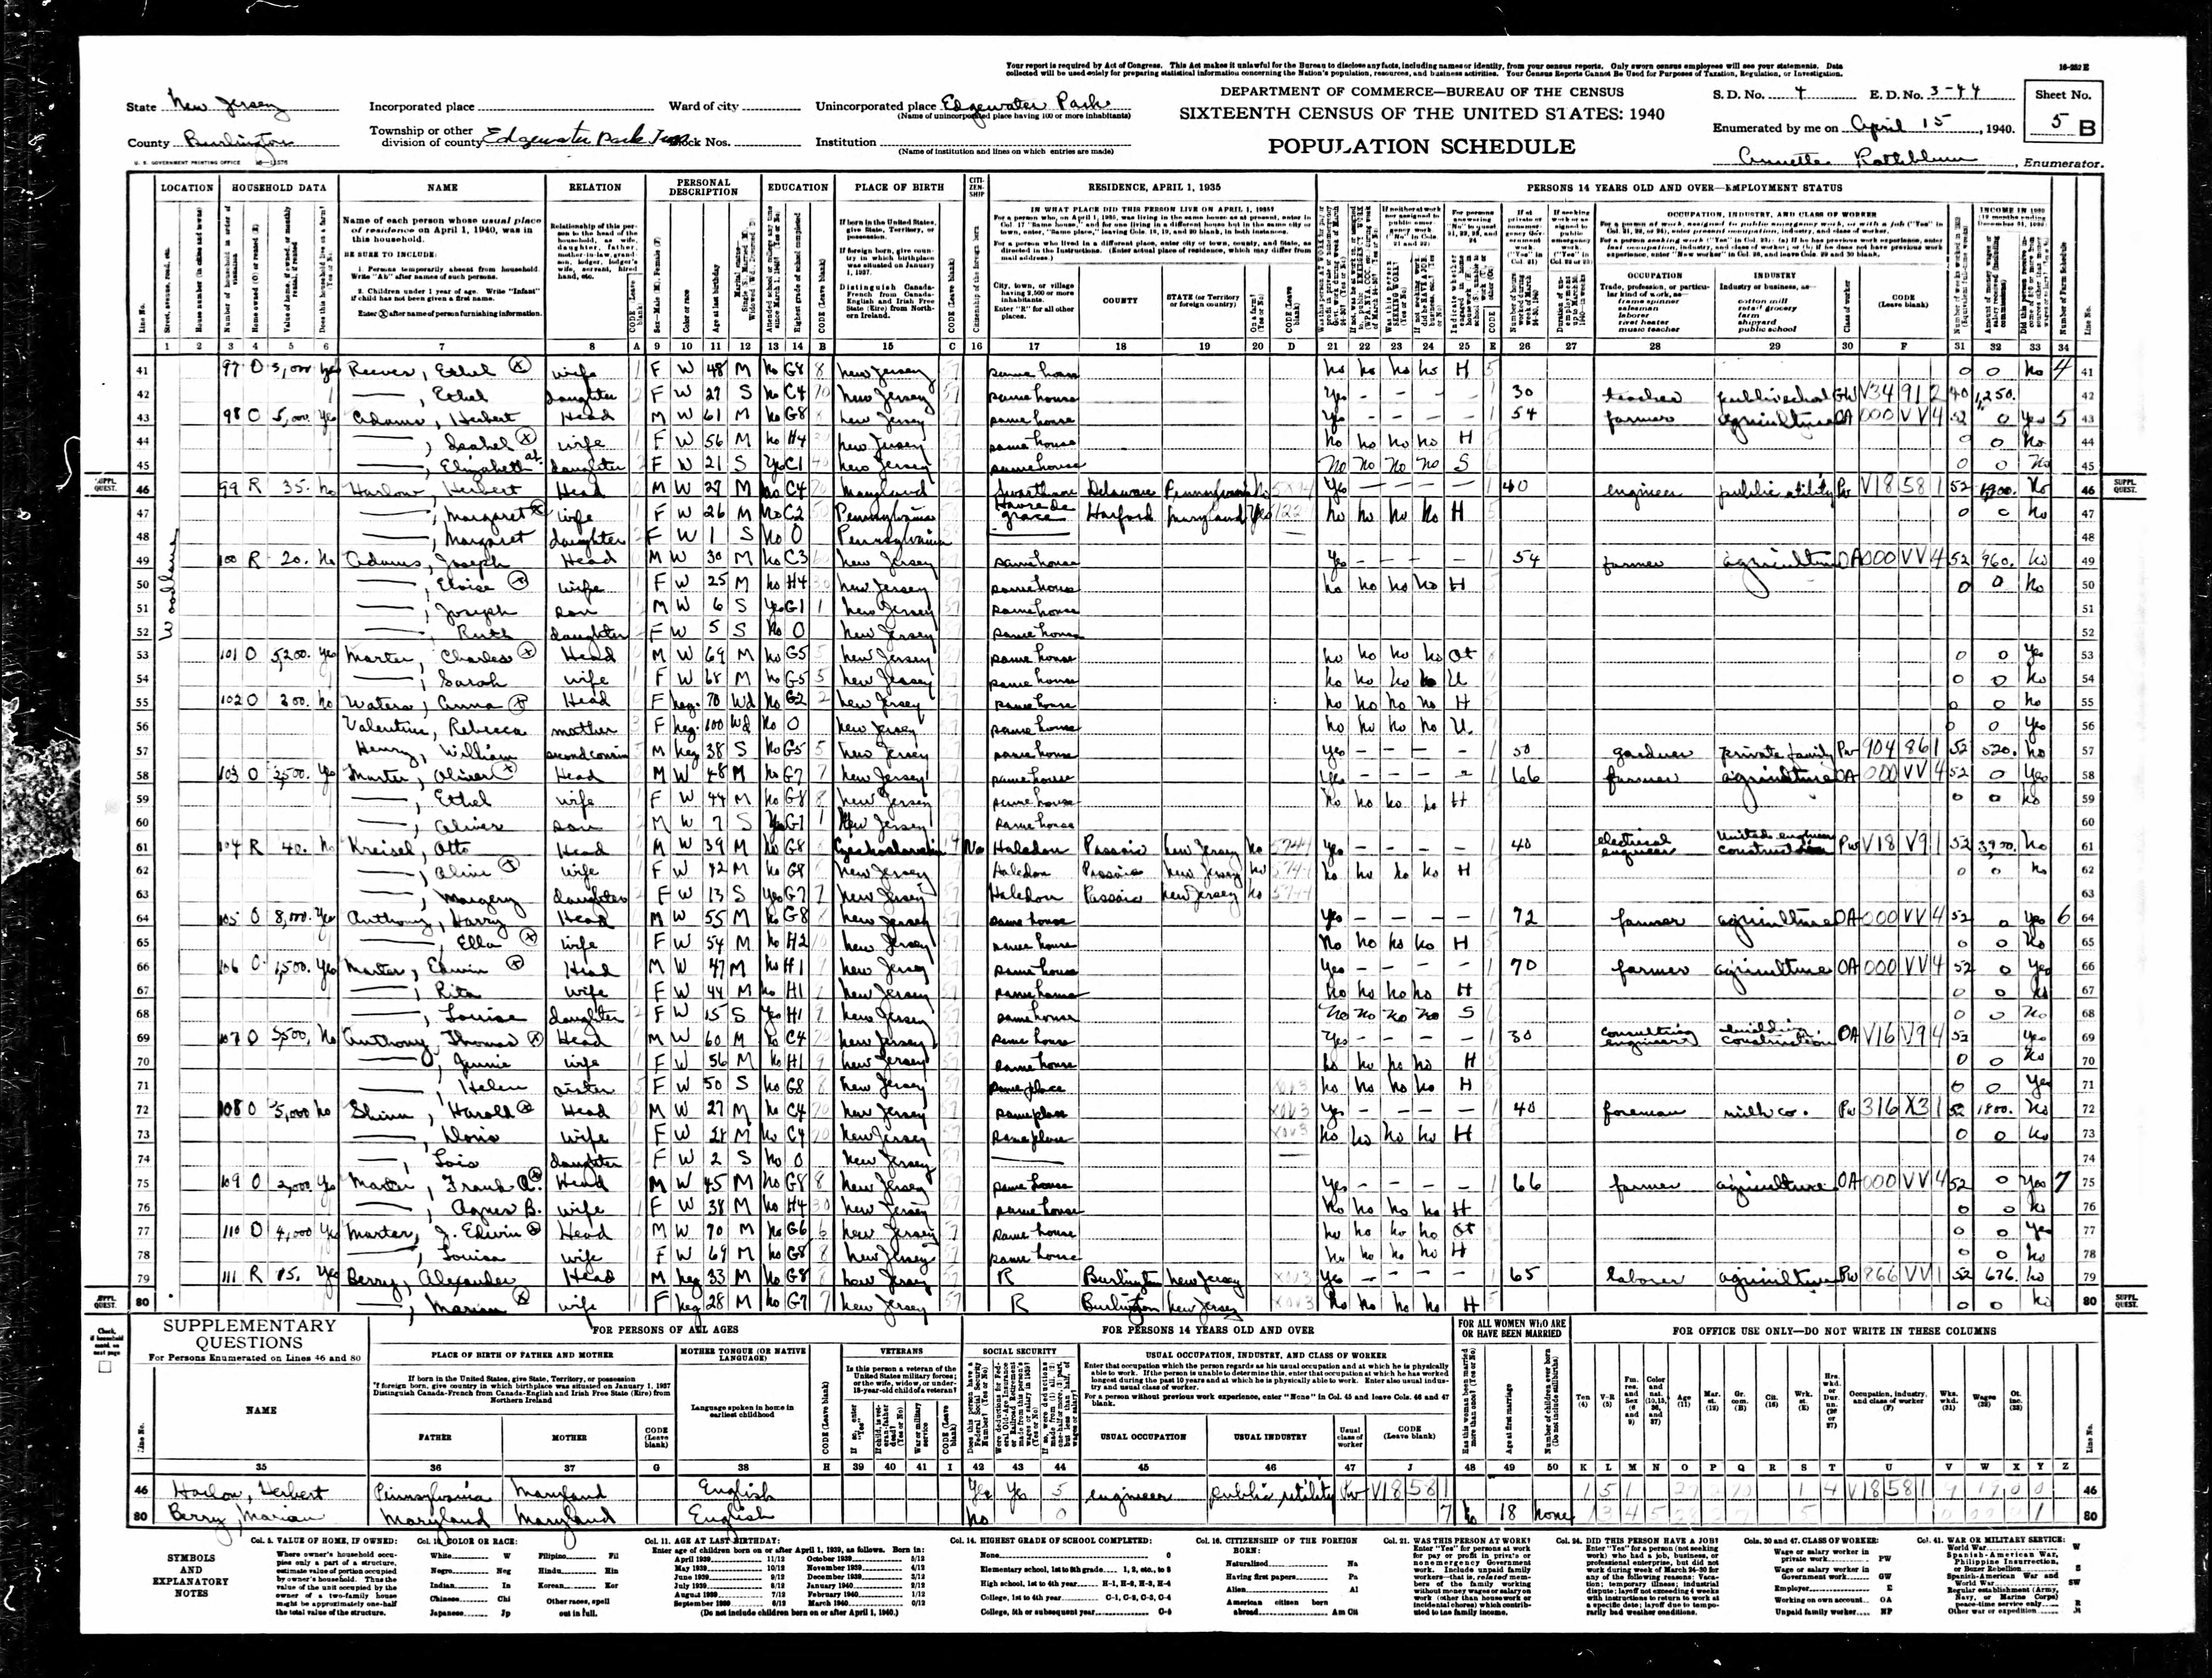 1940 US Census, Joseph Adams, line 51